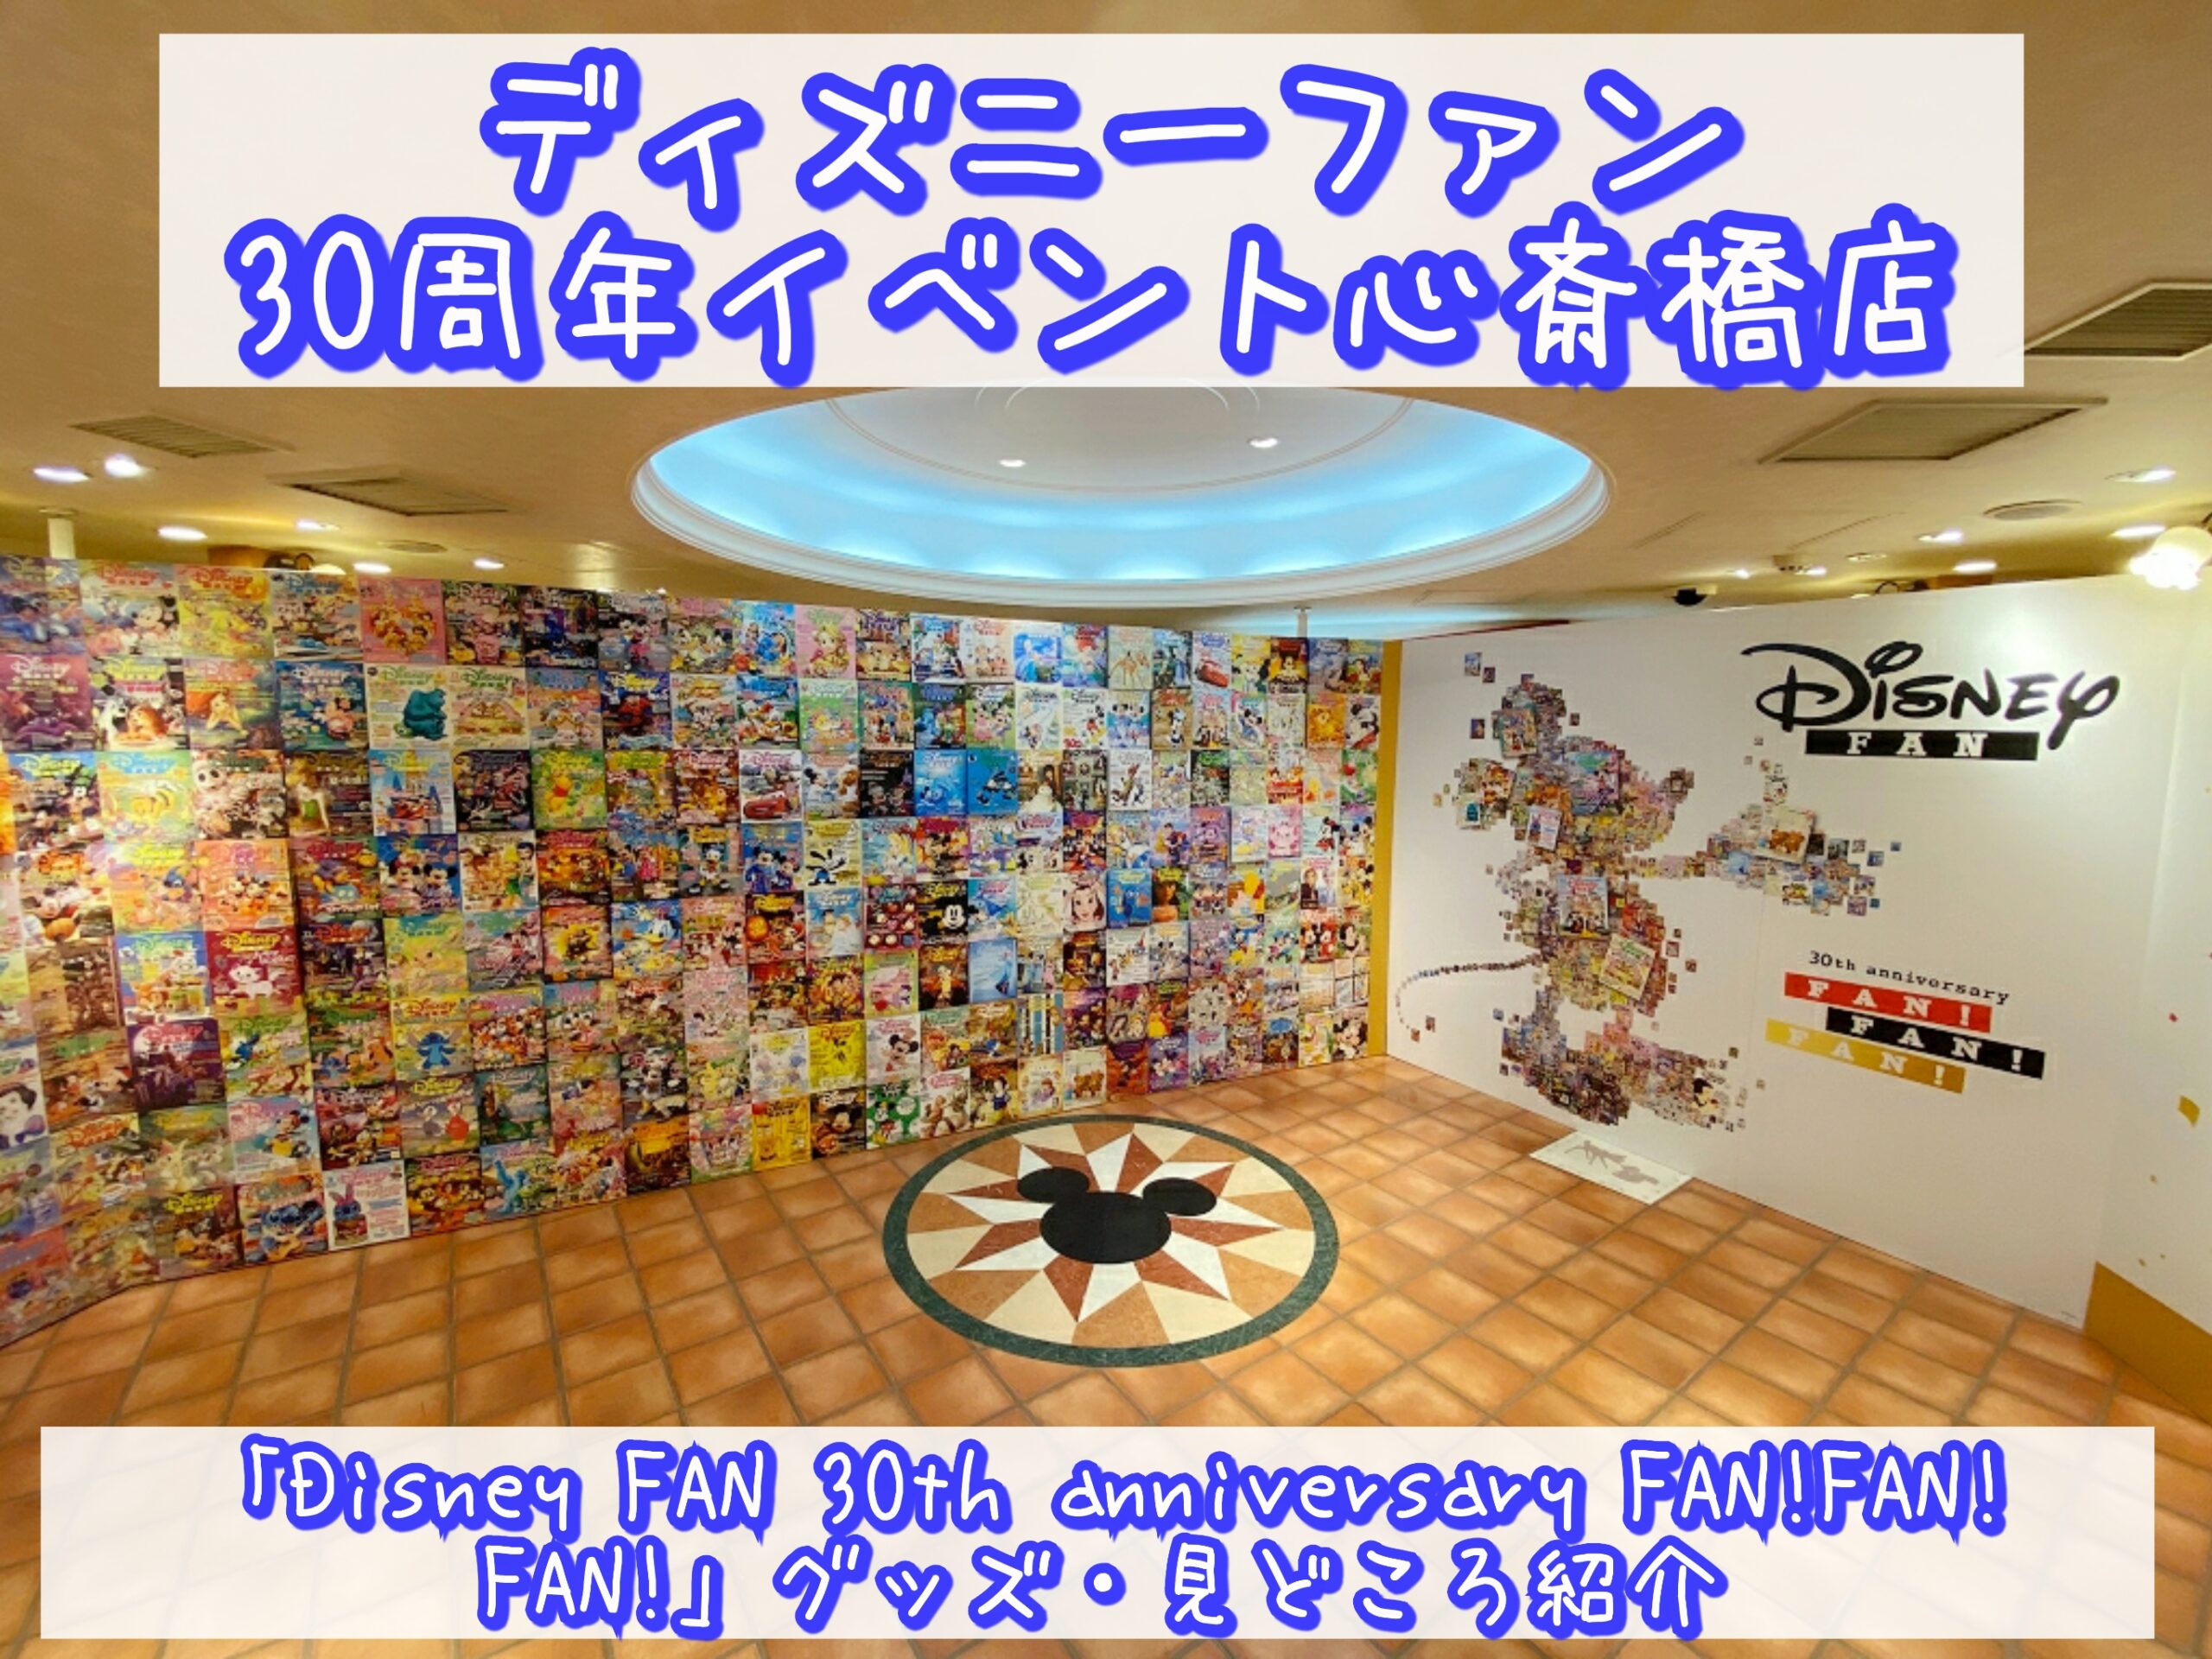 ディズニーファン30周年イベント心斎橋店「Disney FAN 30th anniversary FAN! FAN! FAN!」グッズ・見どころ紹介